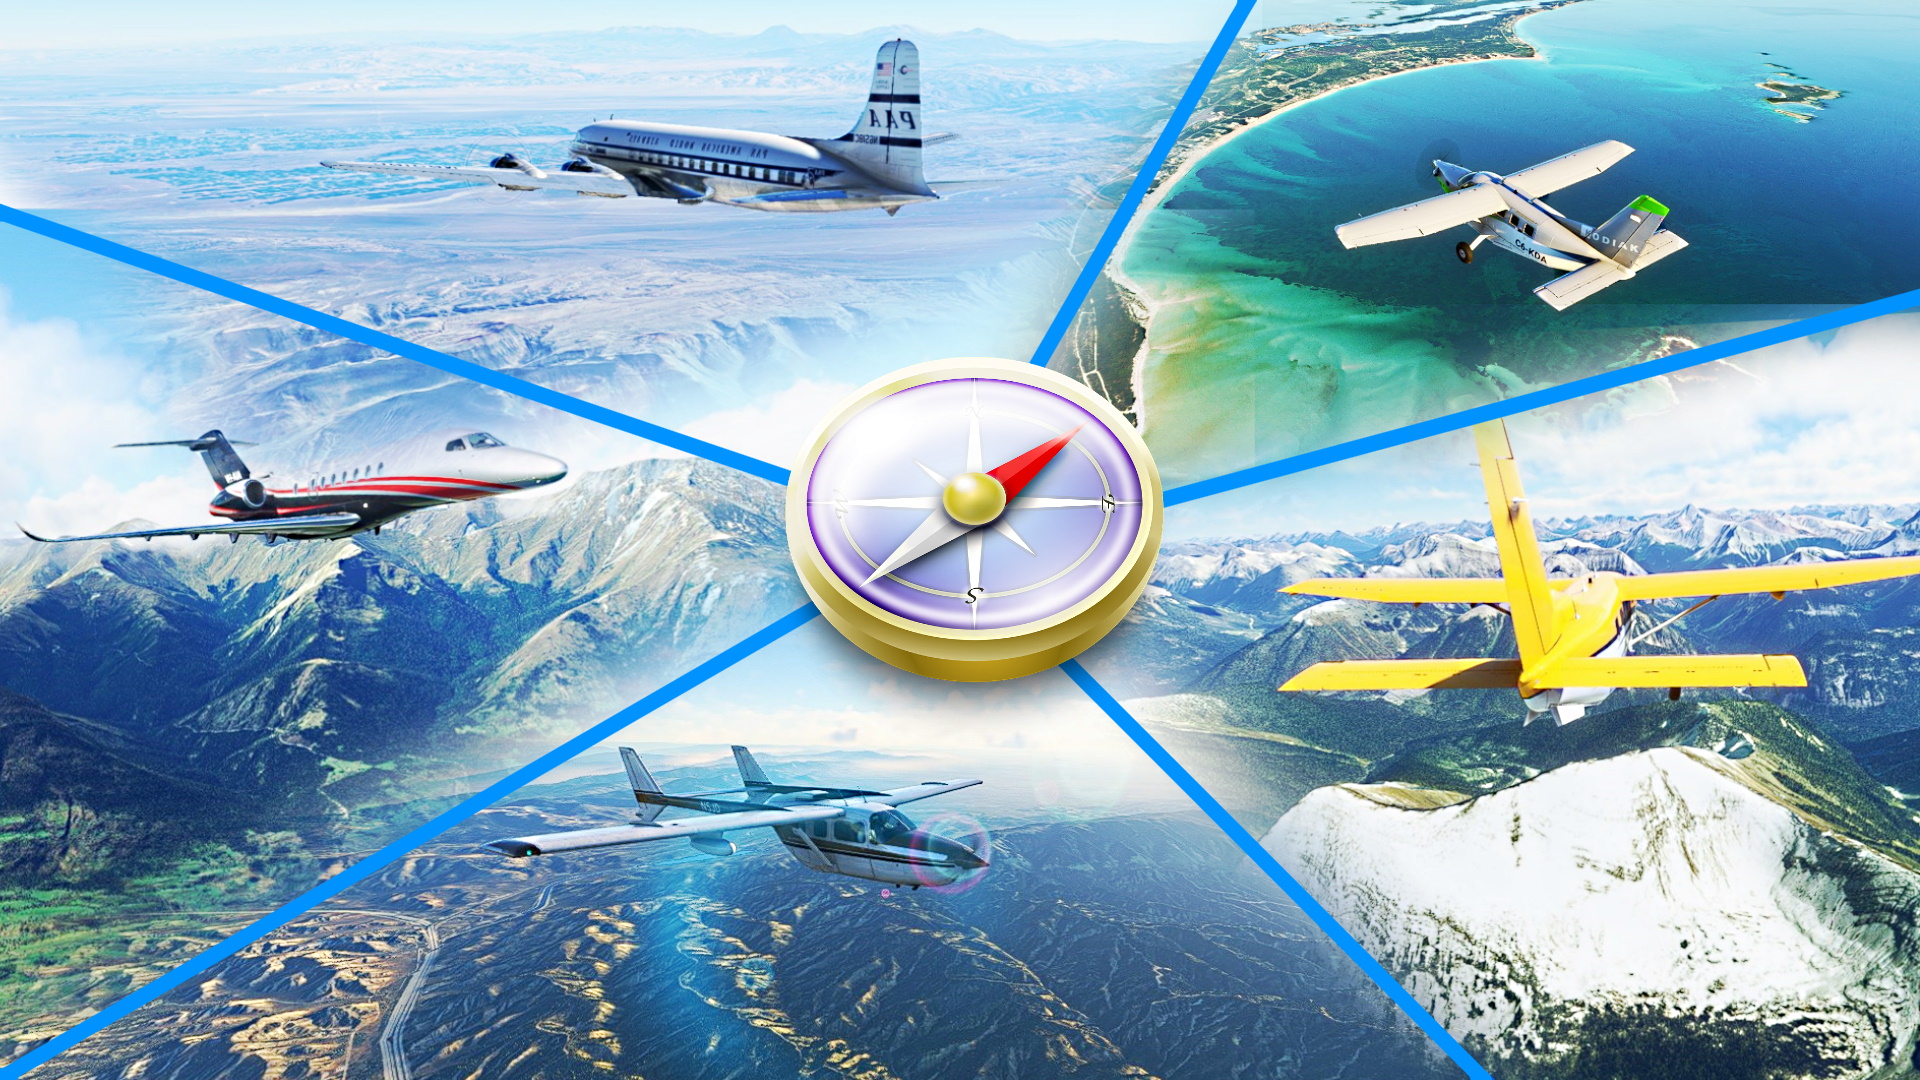 Beautiful Locations In Microsoft Flight Simulator 2020